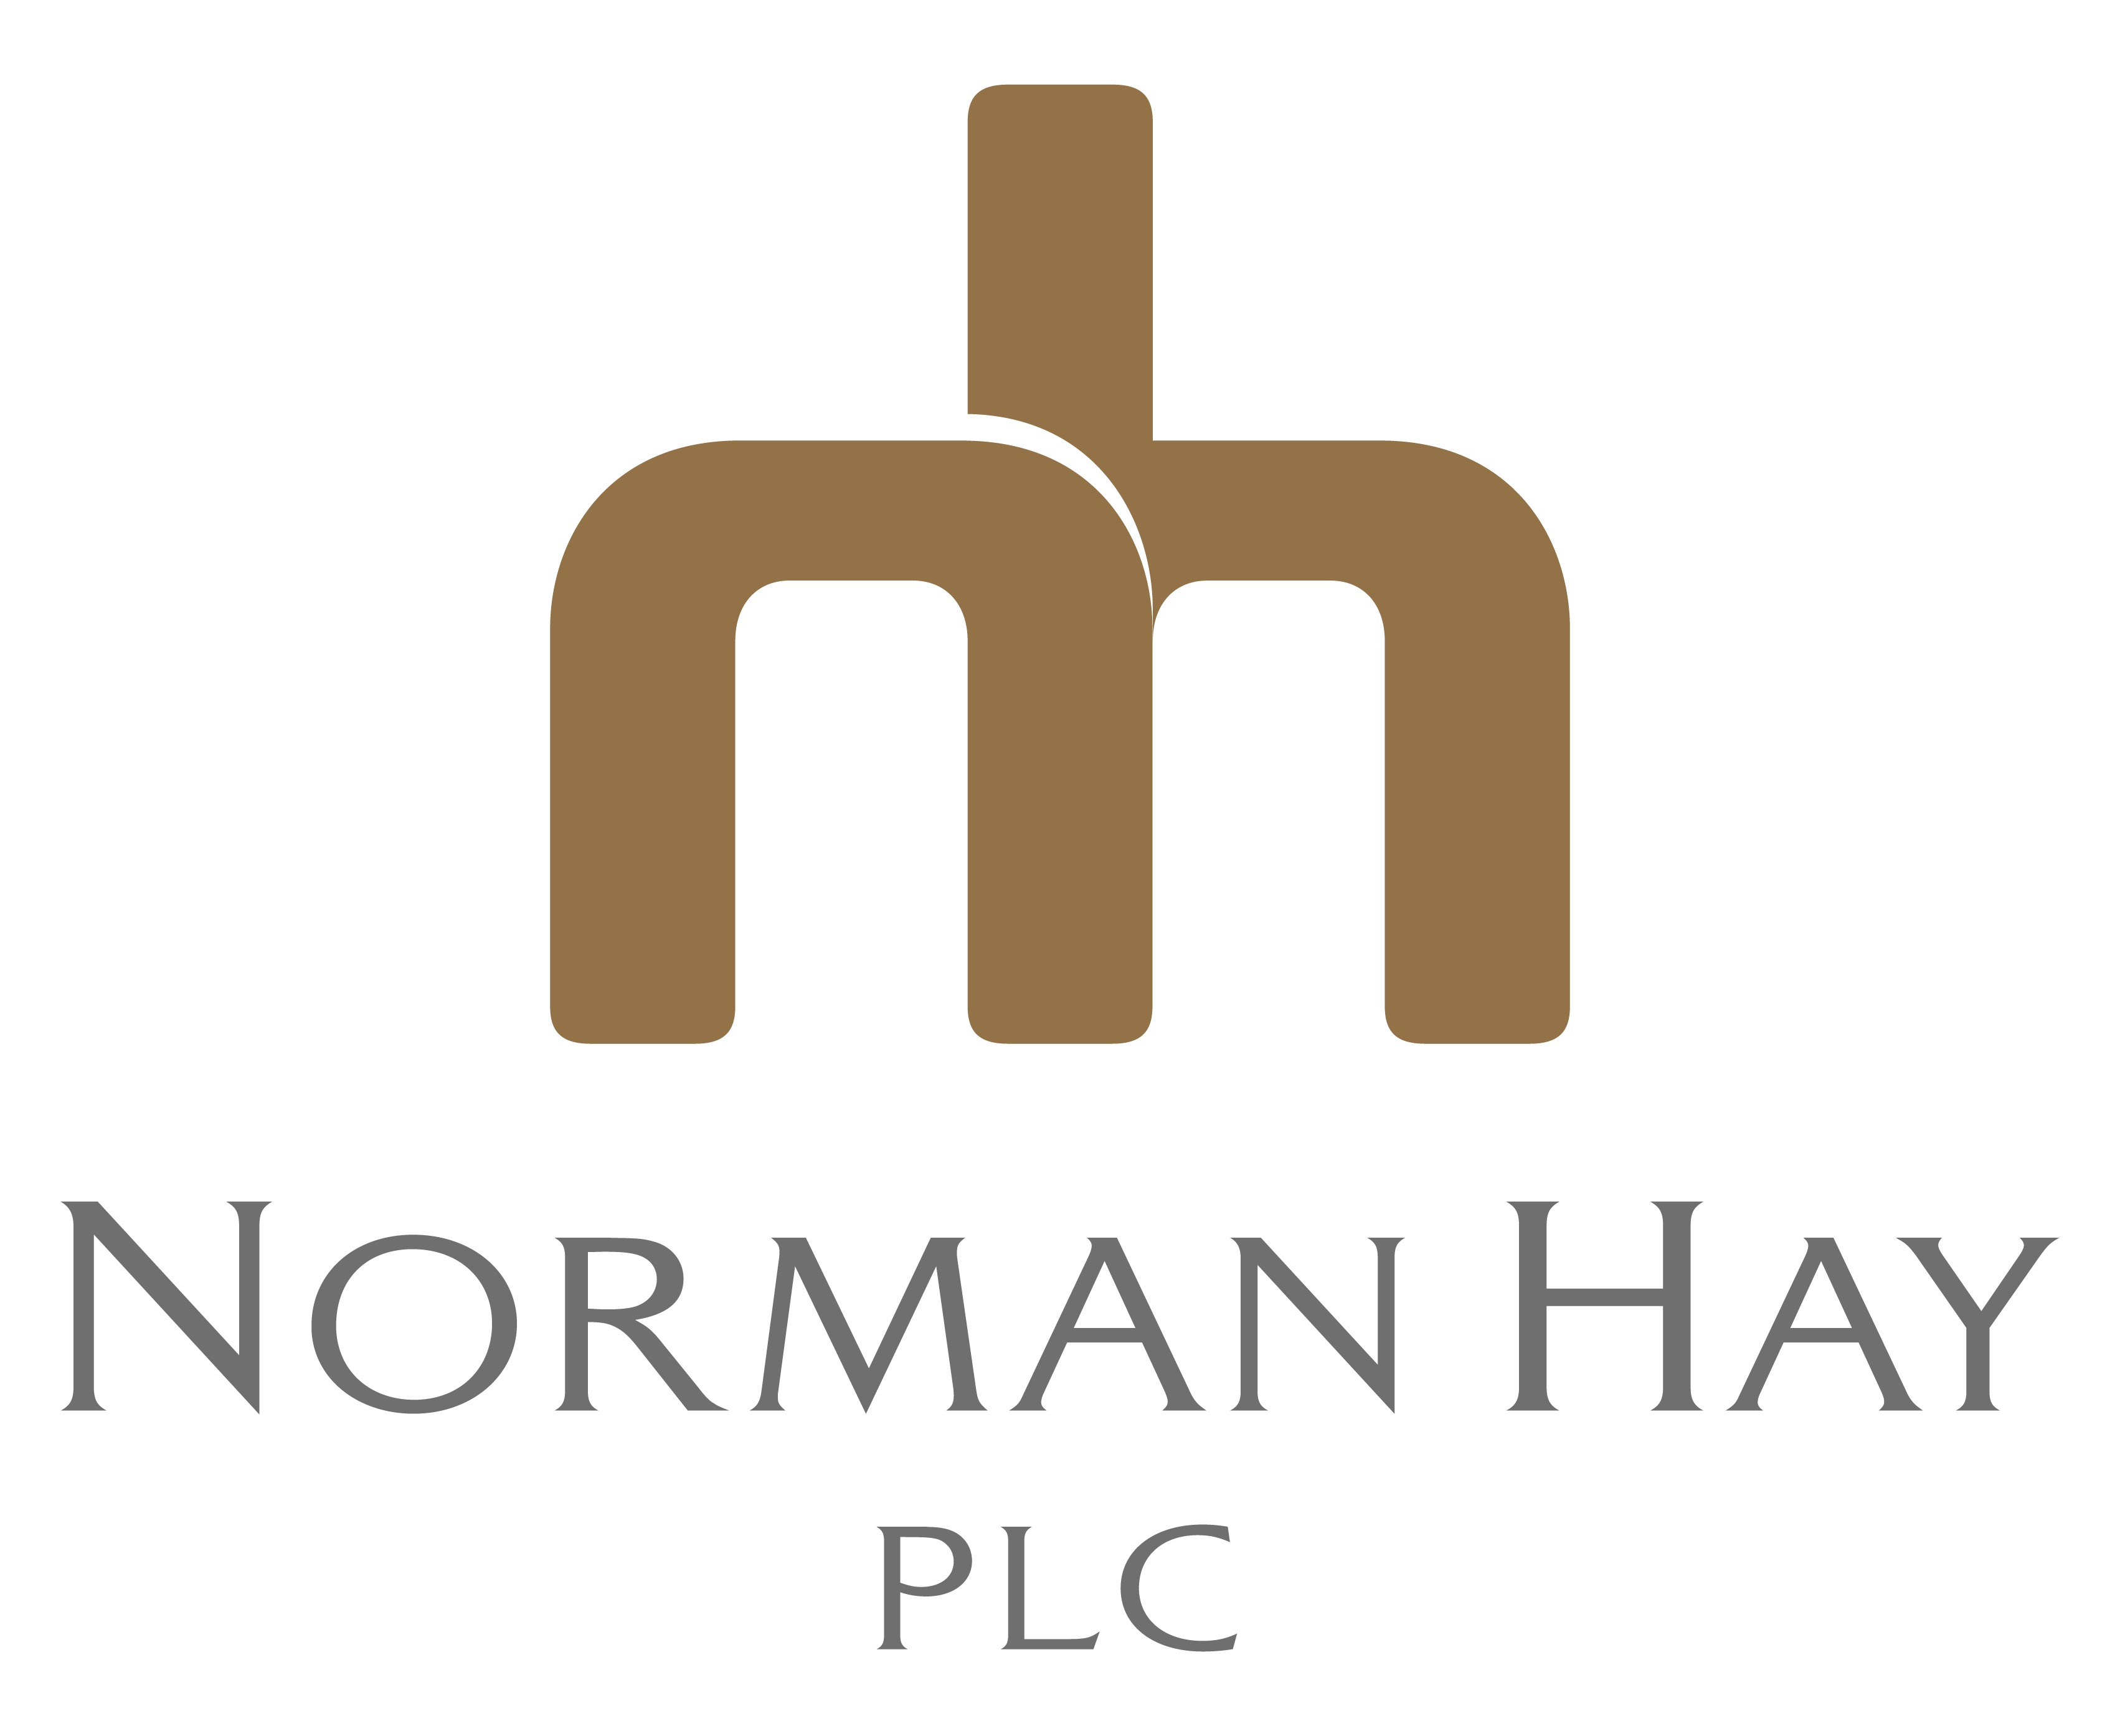 Norman Hay plc